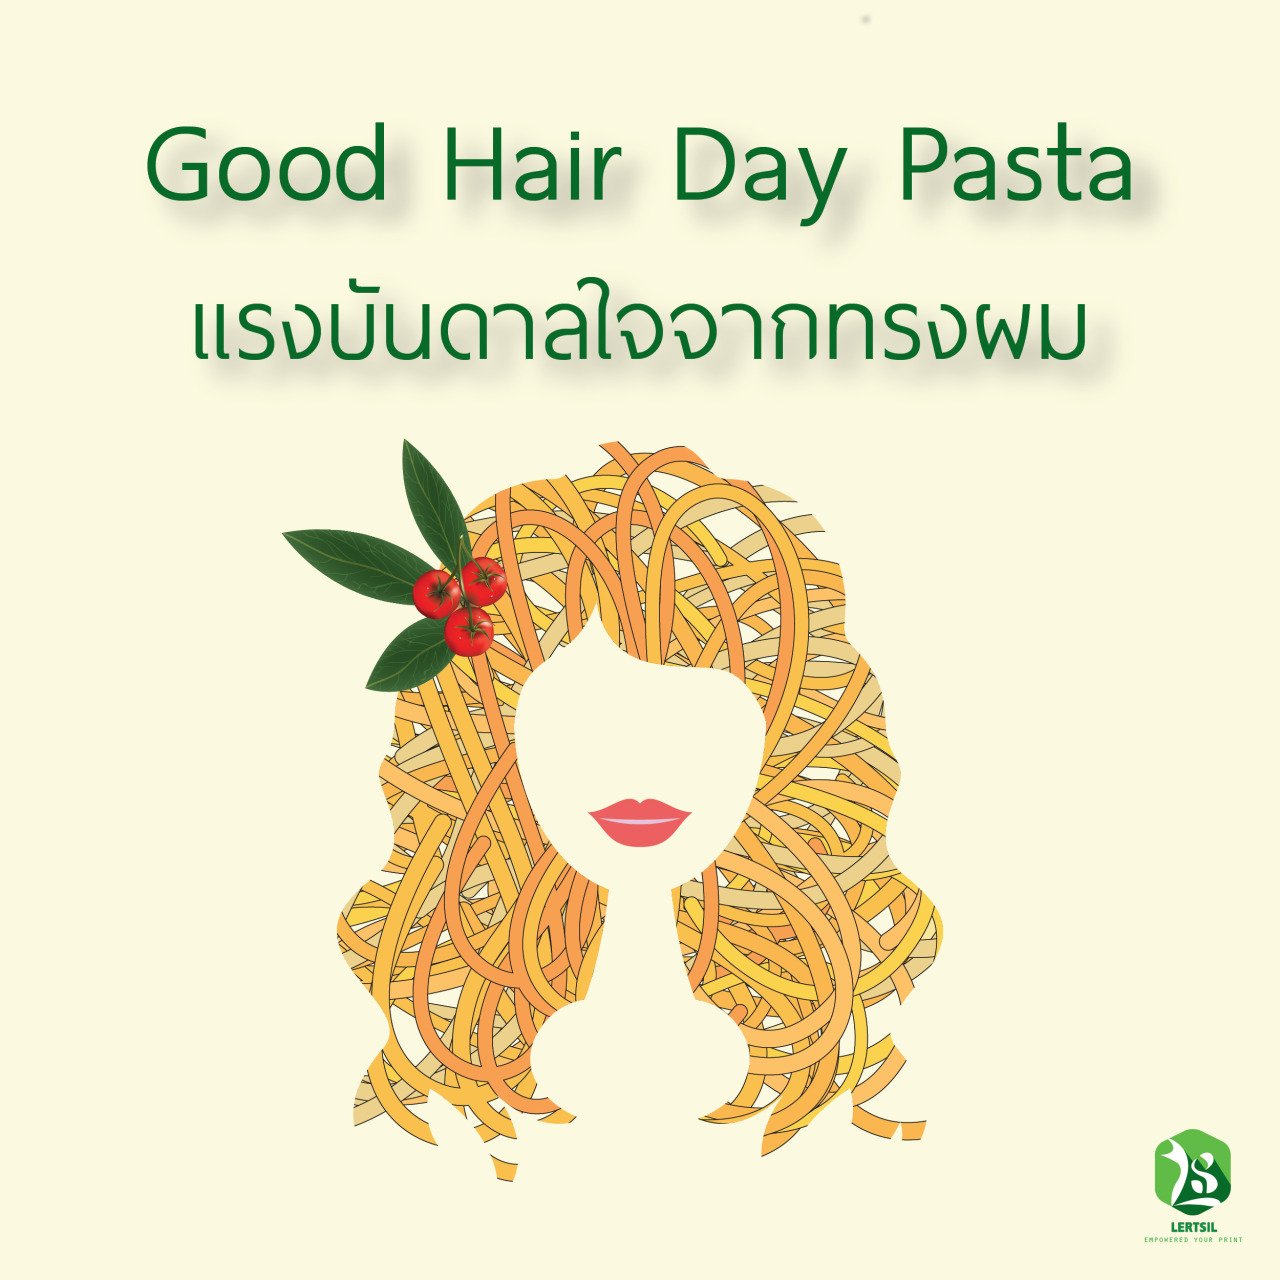 Good Hair Day Pasta เเรงบันดาลใจจากทรงผม